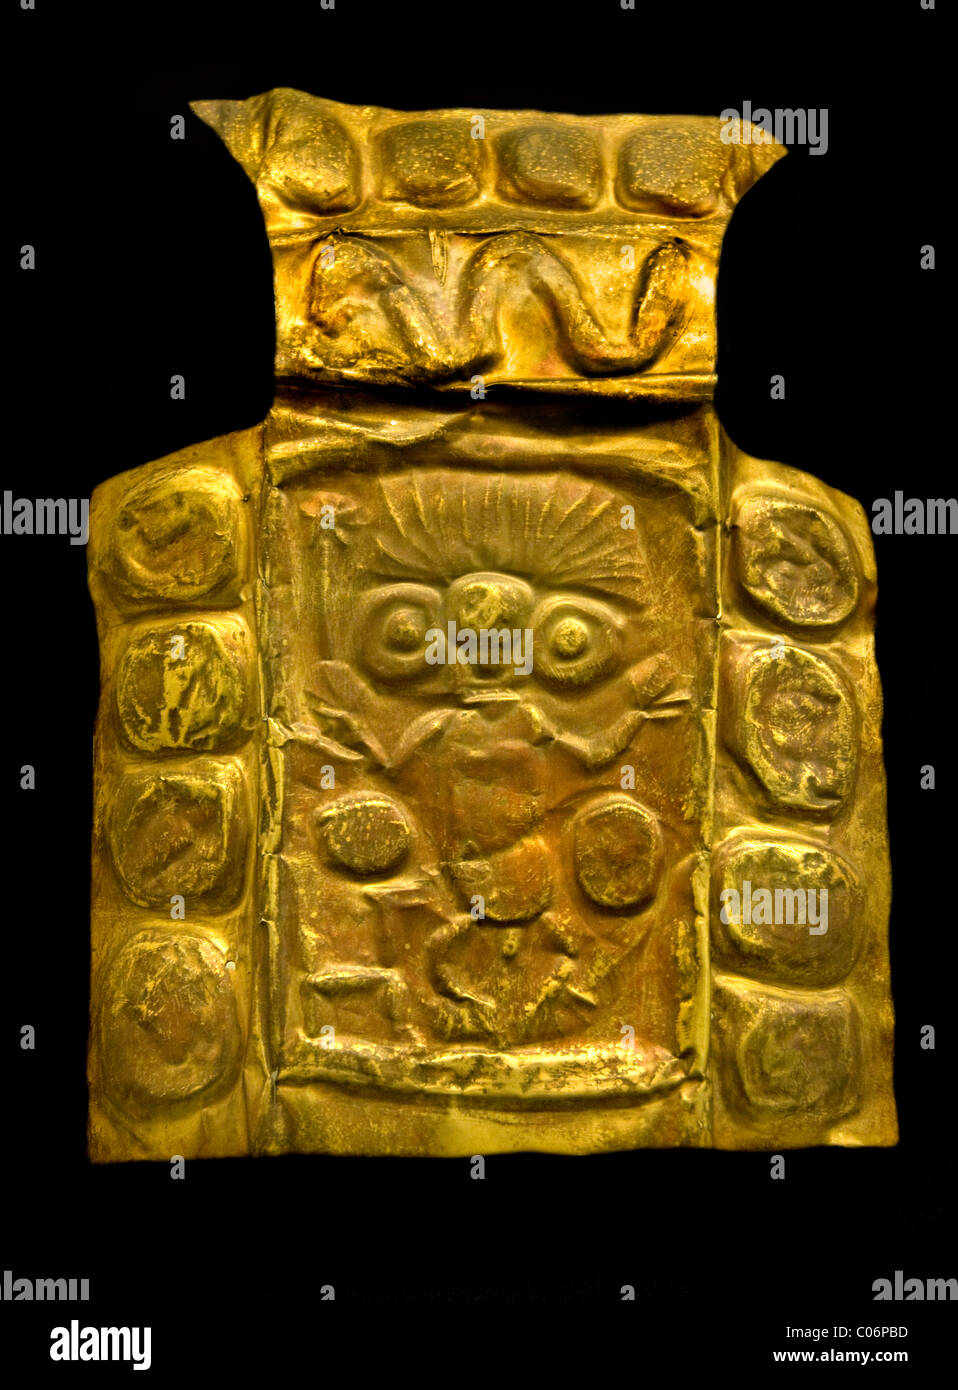 Placa en relieve. Oro. Cultura Inca. (1400-1533 DC). Cusco, Perú. Insignia peruana en relieve de oro Foto de stock